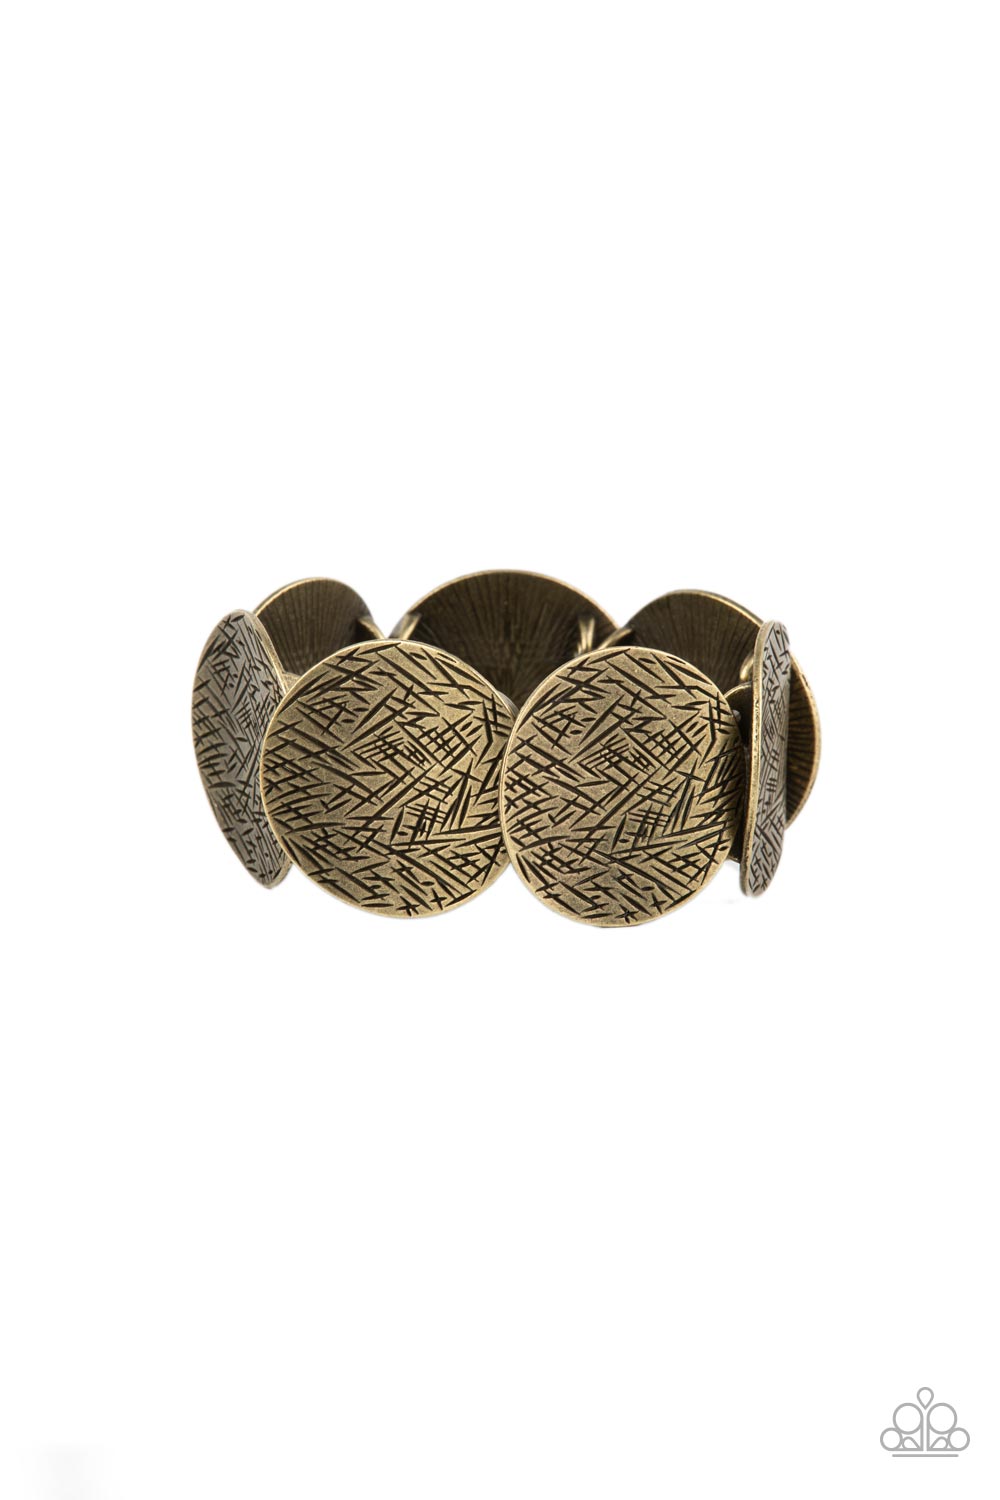 Extra Etched Brass Bracelet